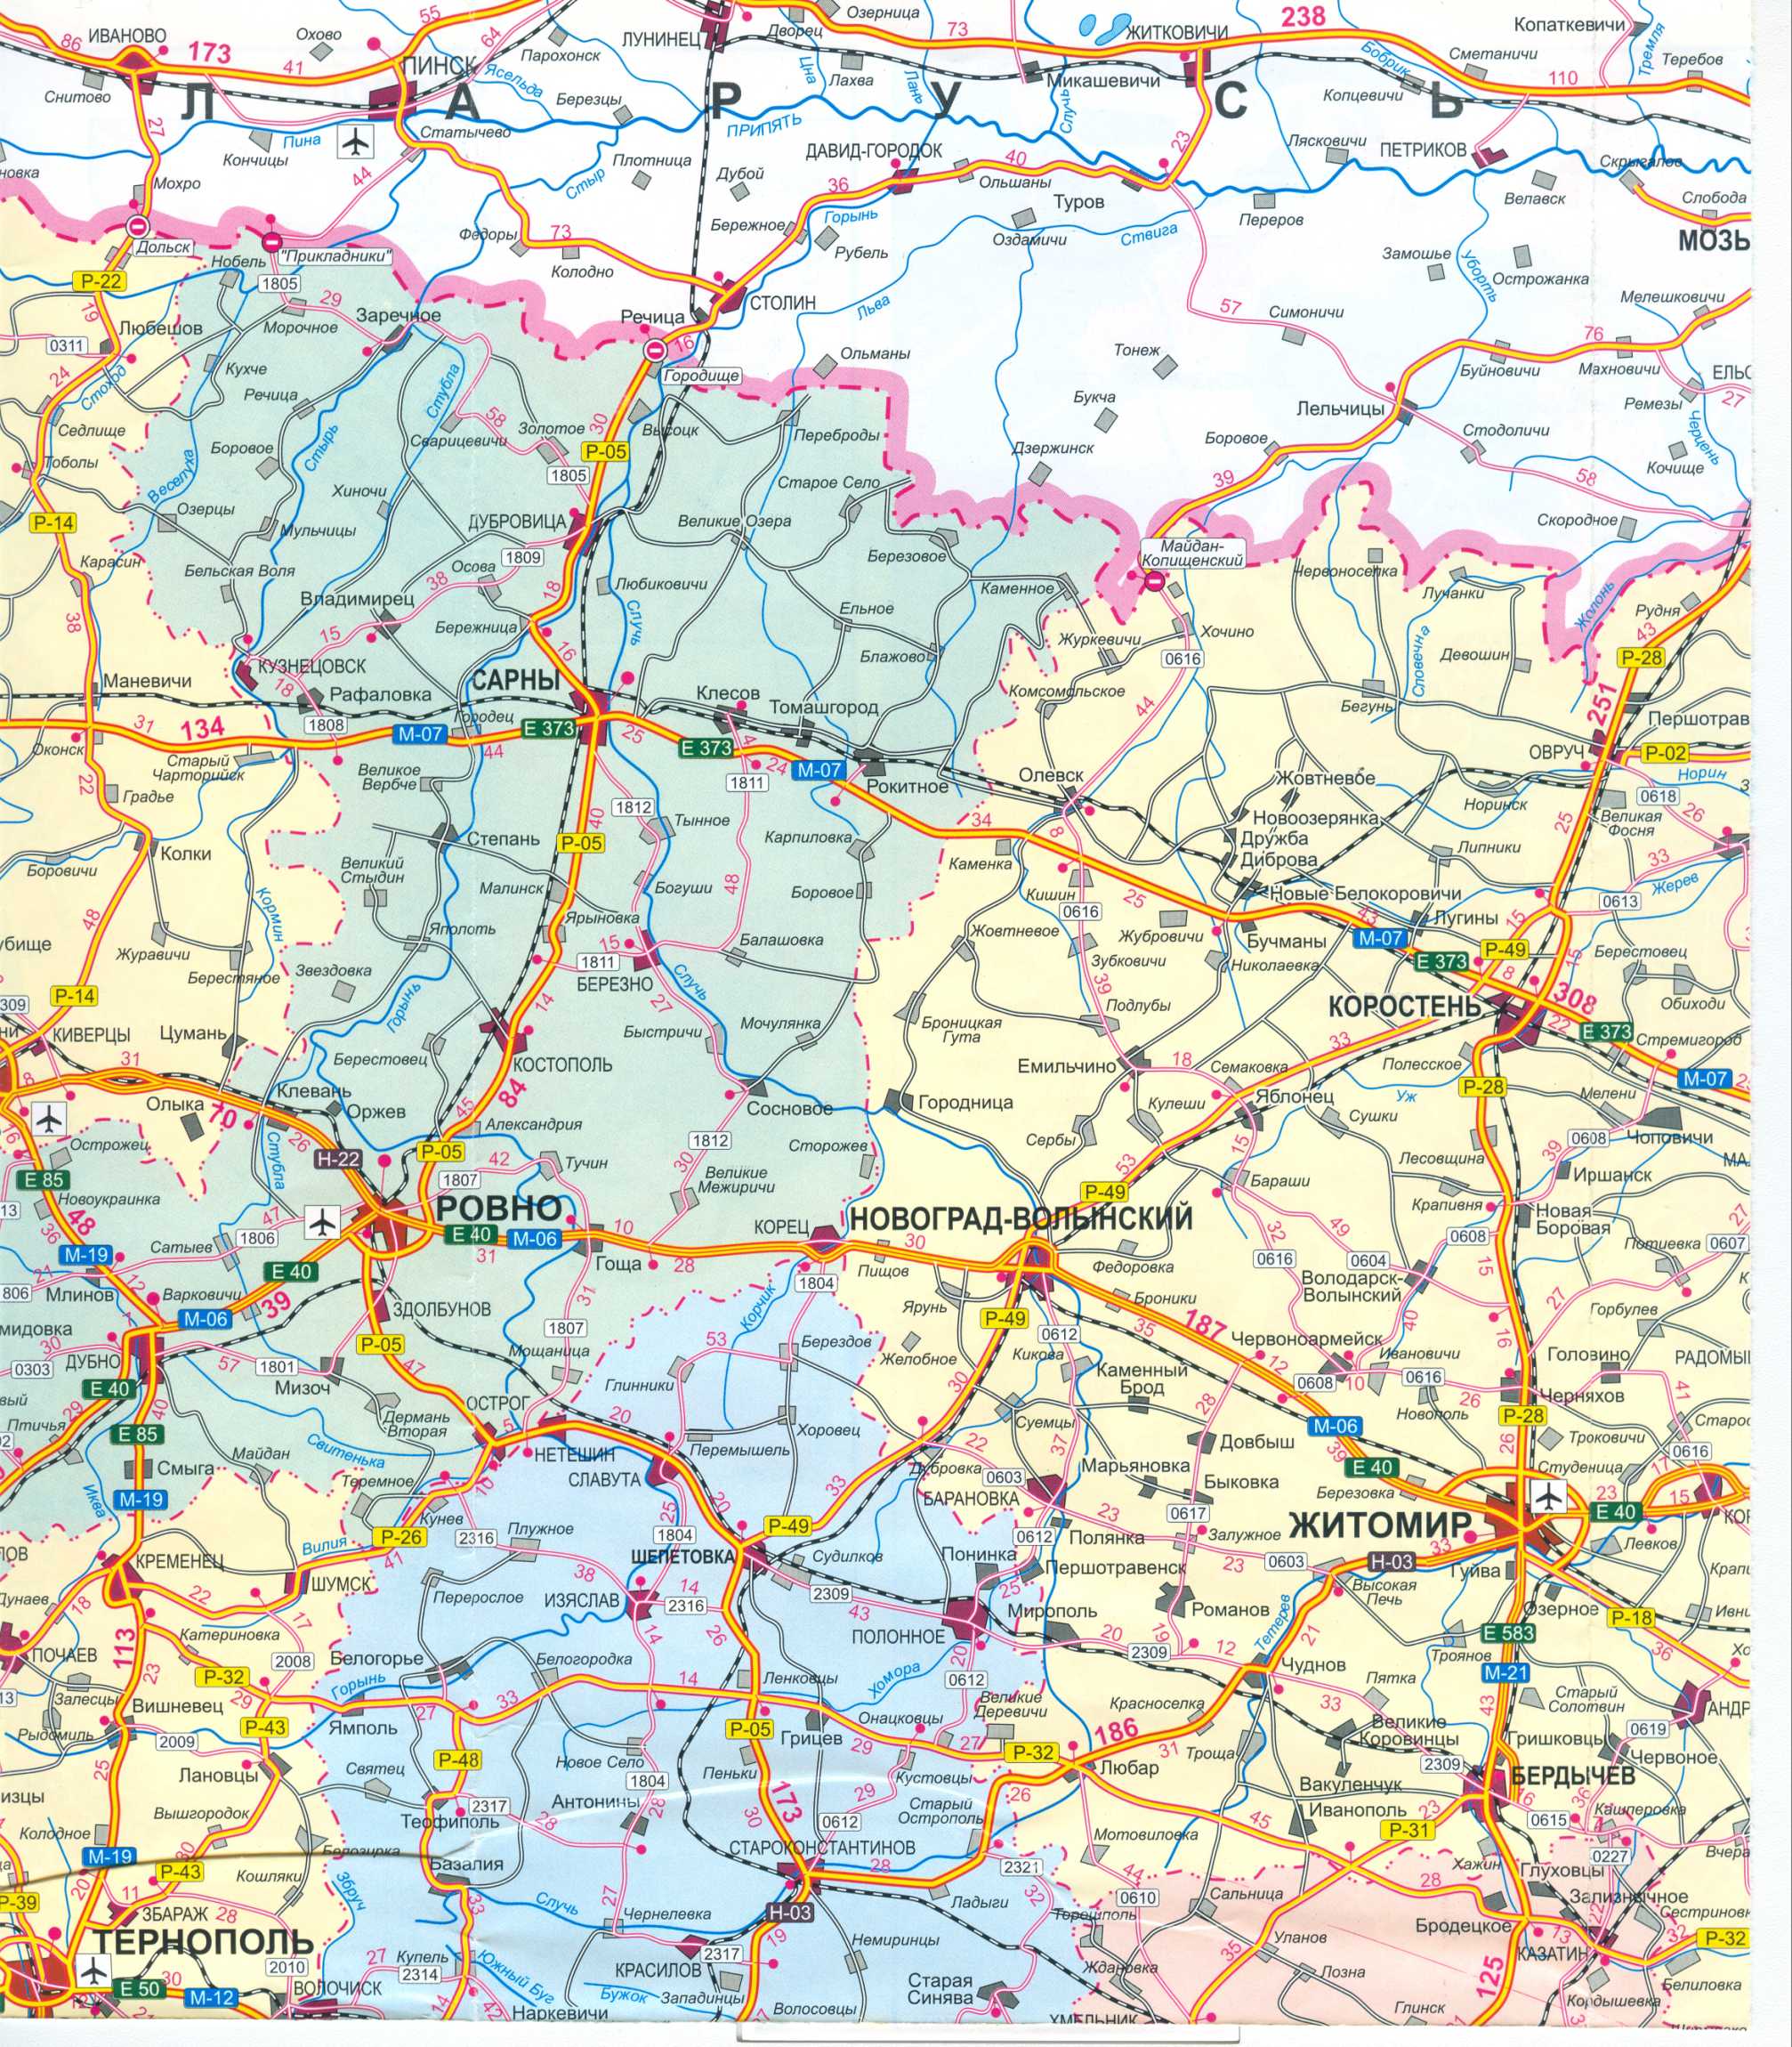 Karte der Ukraine frei. Road Map der Ukraine kostenlos herunterladen. Große Karte von Ukraine Straßen frei, B0